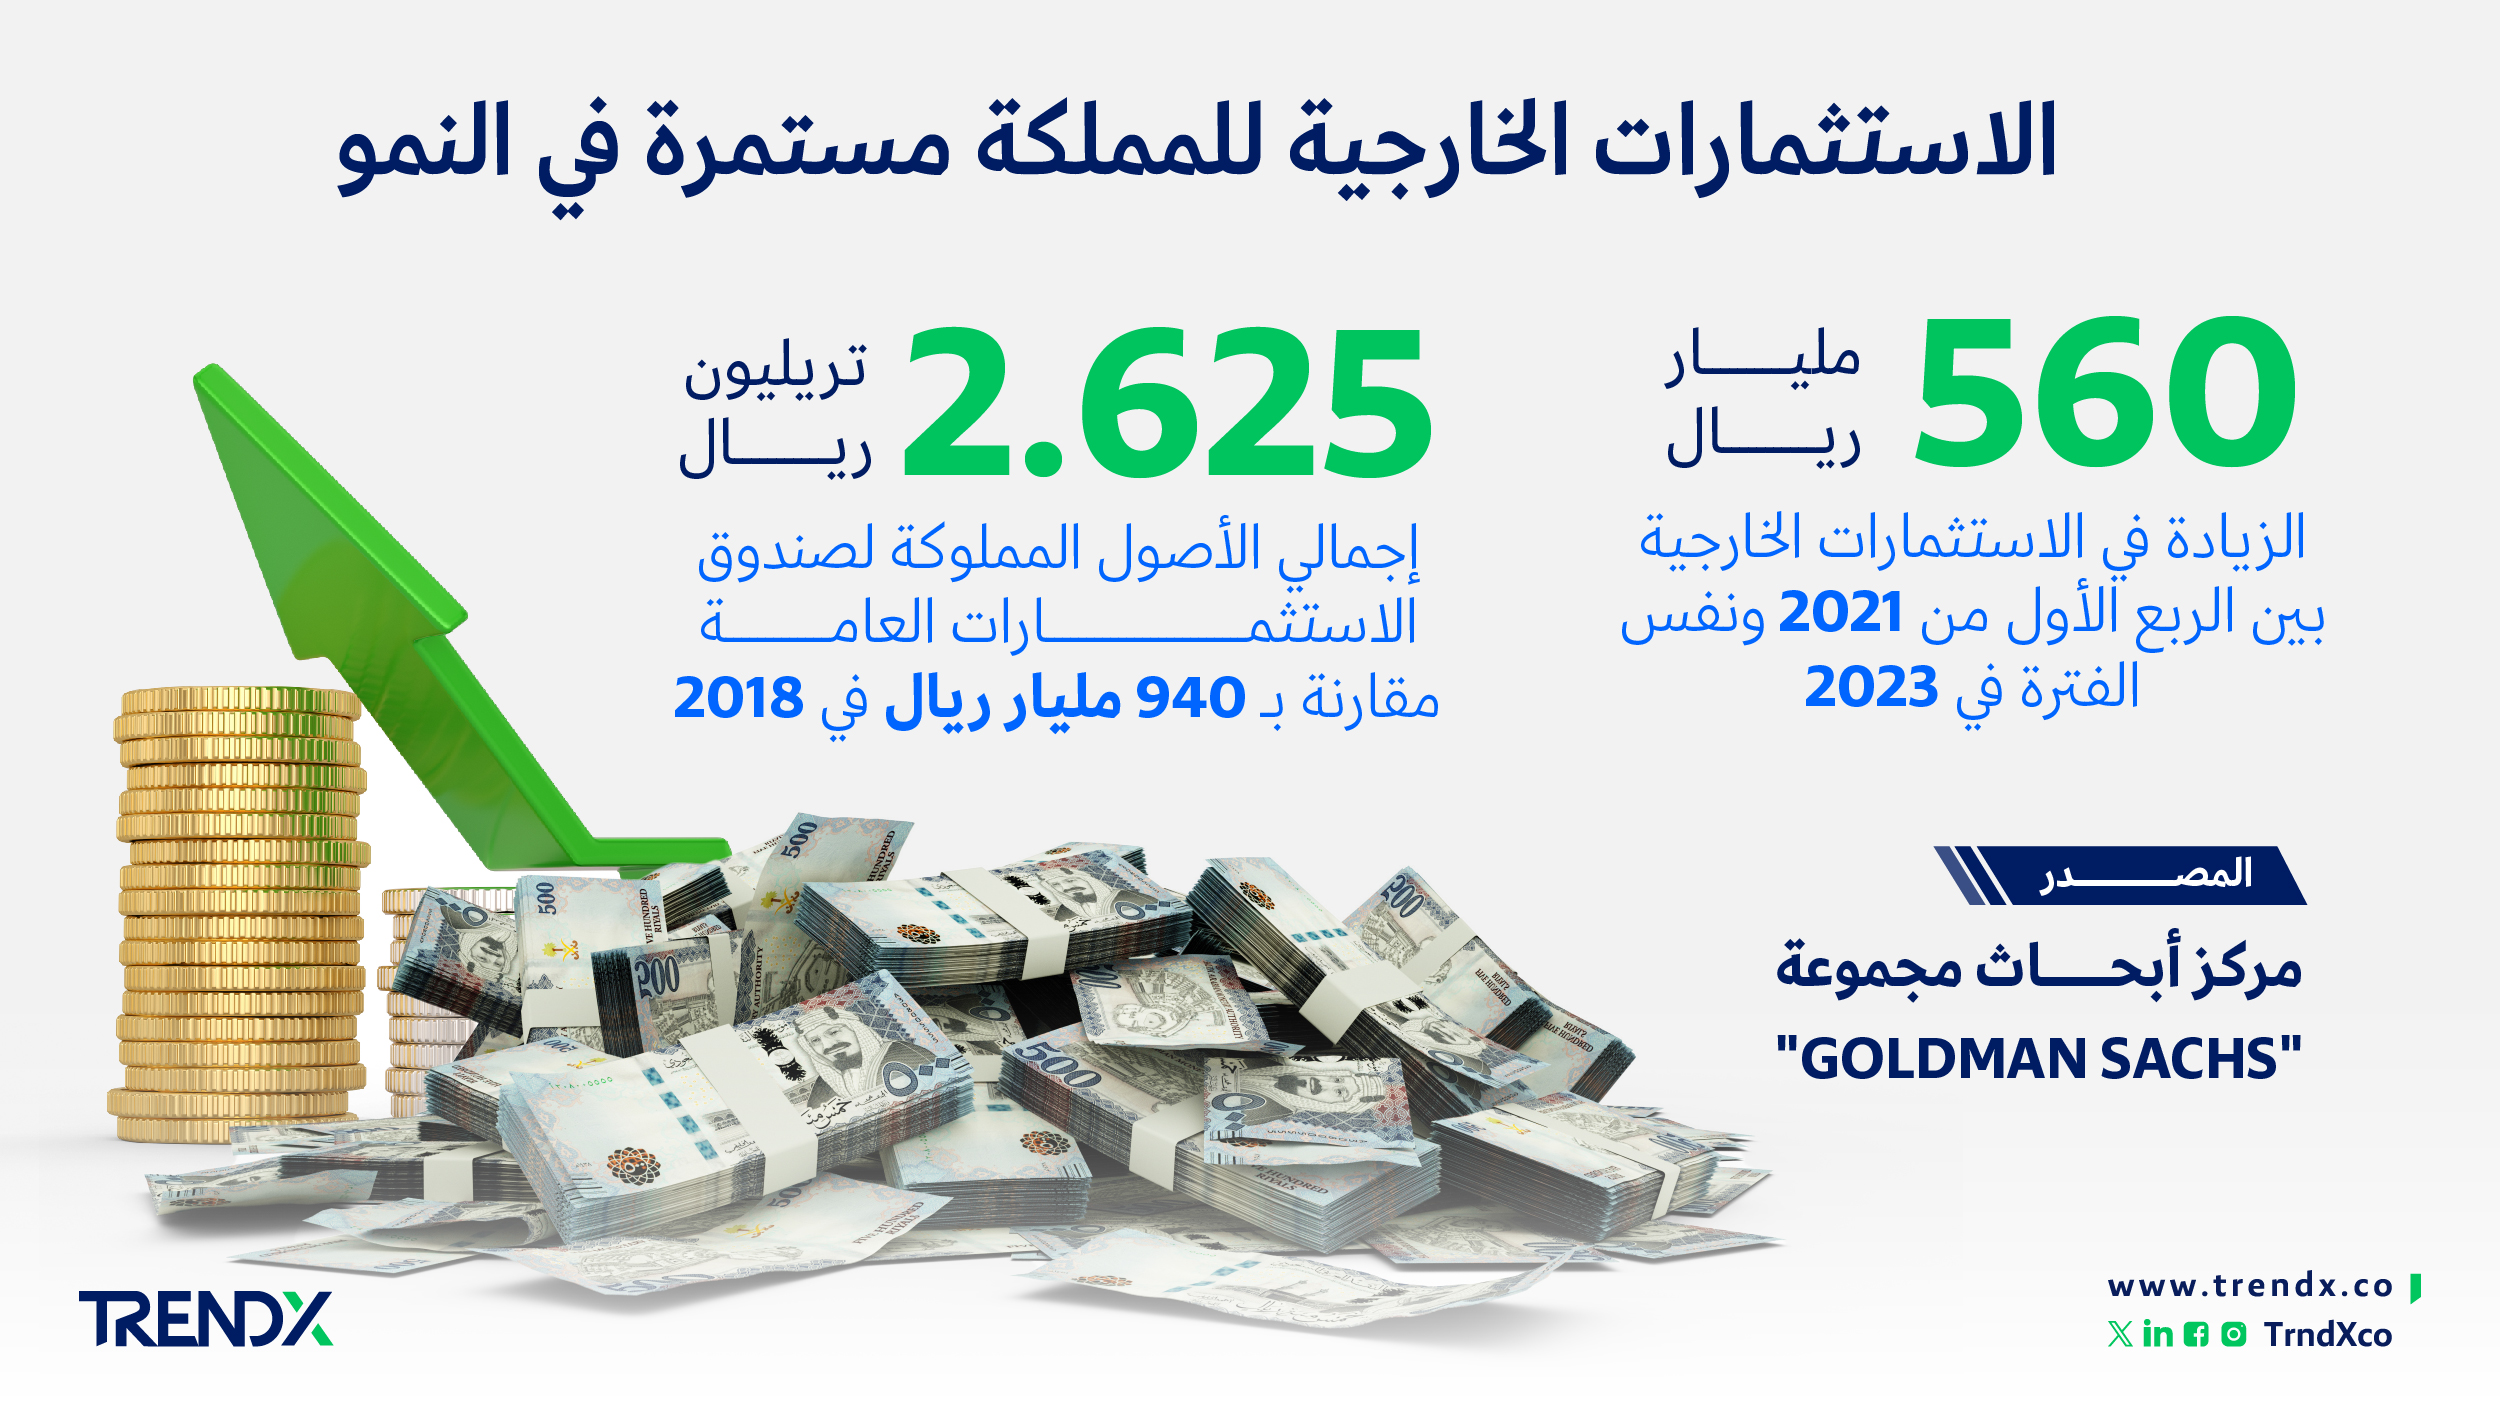 الاستثمارات الخارجية للمملكة مستمرة في النمو ثروات السعوديين في الفترة من عام 2000 إلى 2022 01